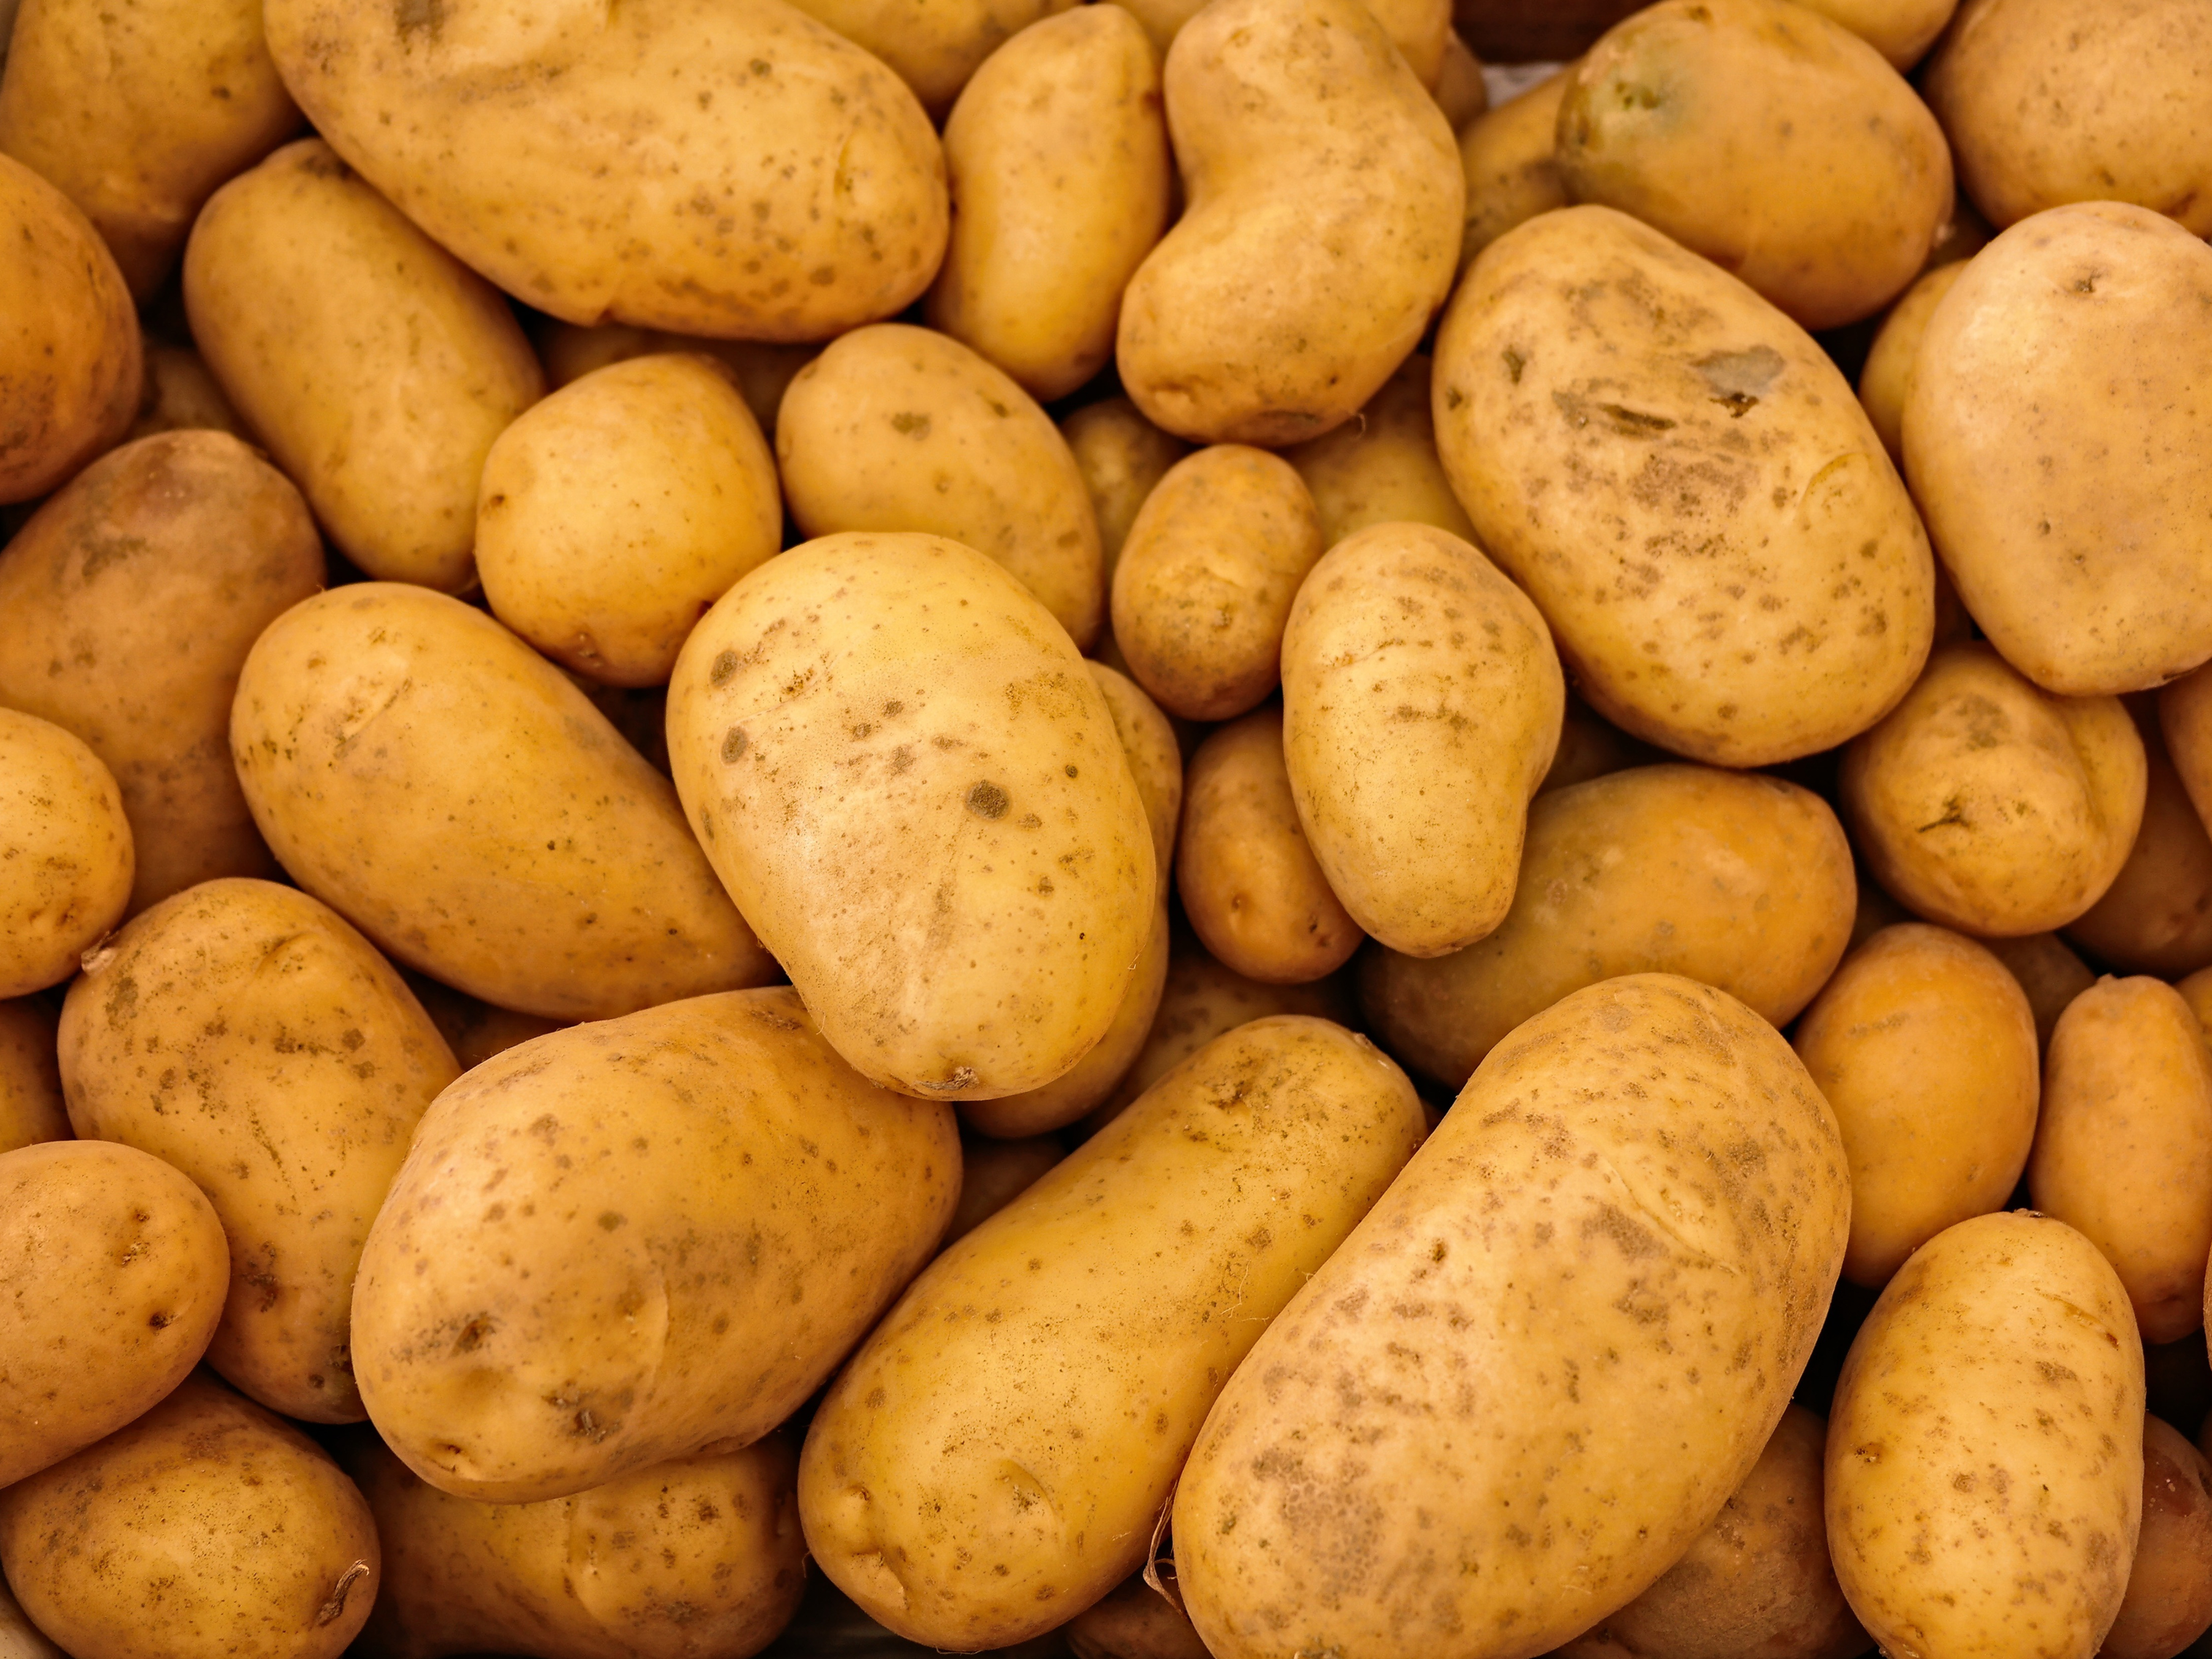 Dozens of golden brown potatoes